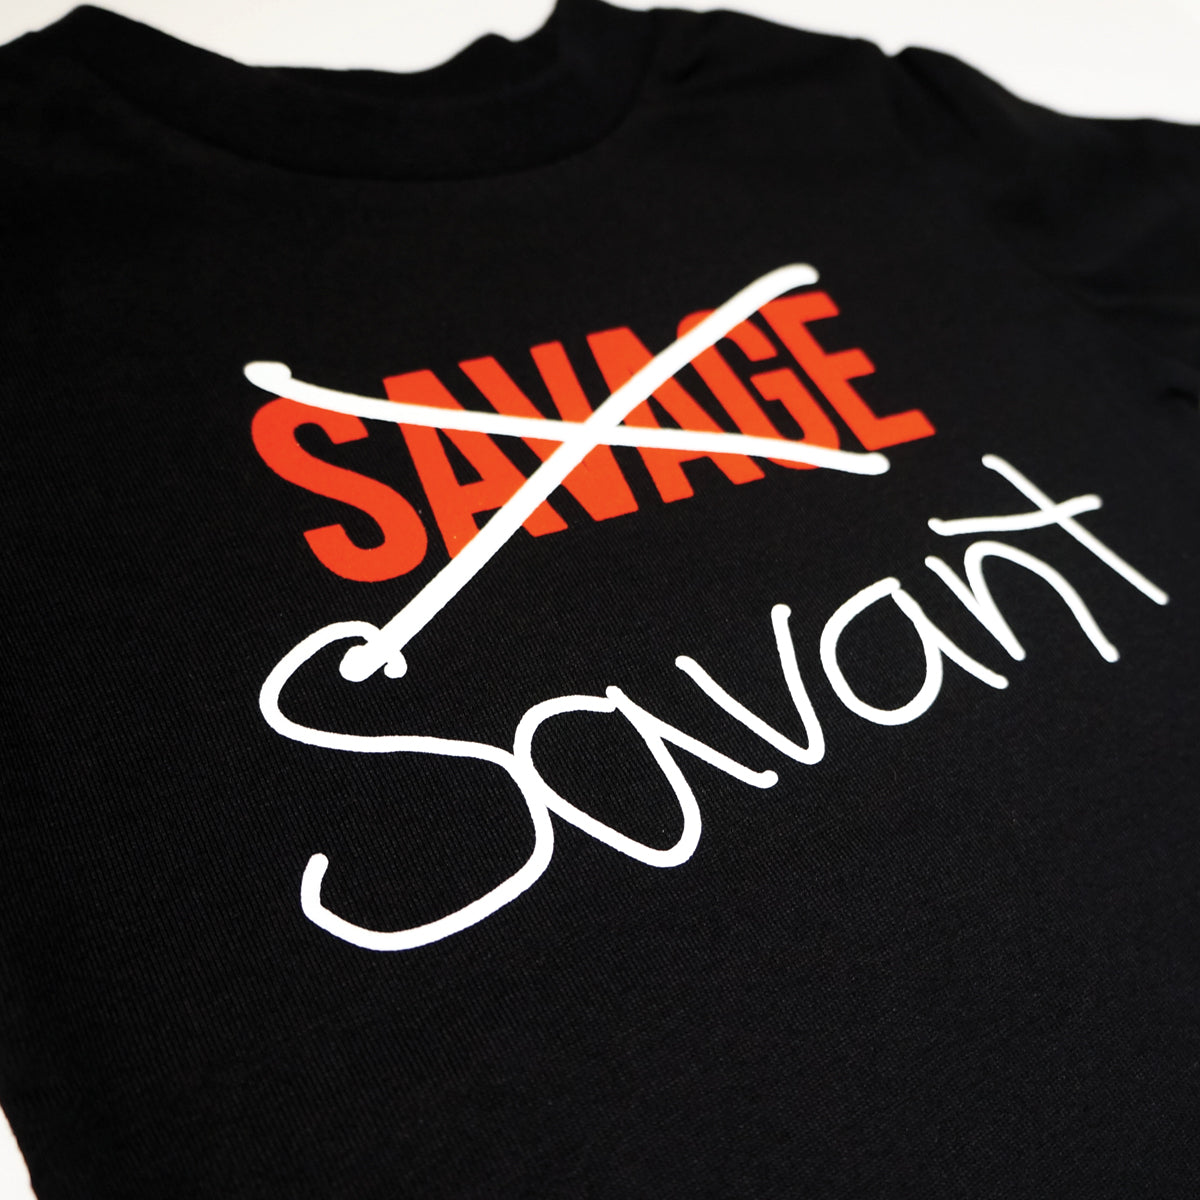 Savant T-shirt (Black)